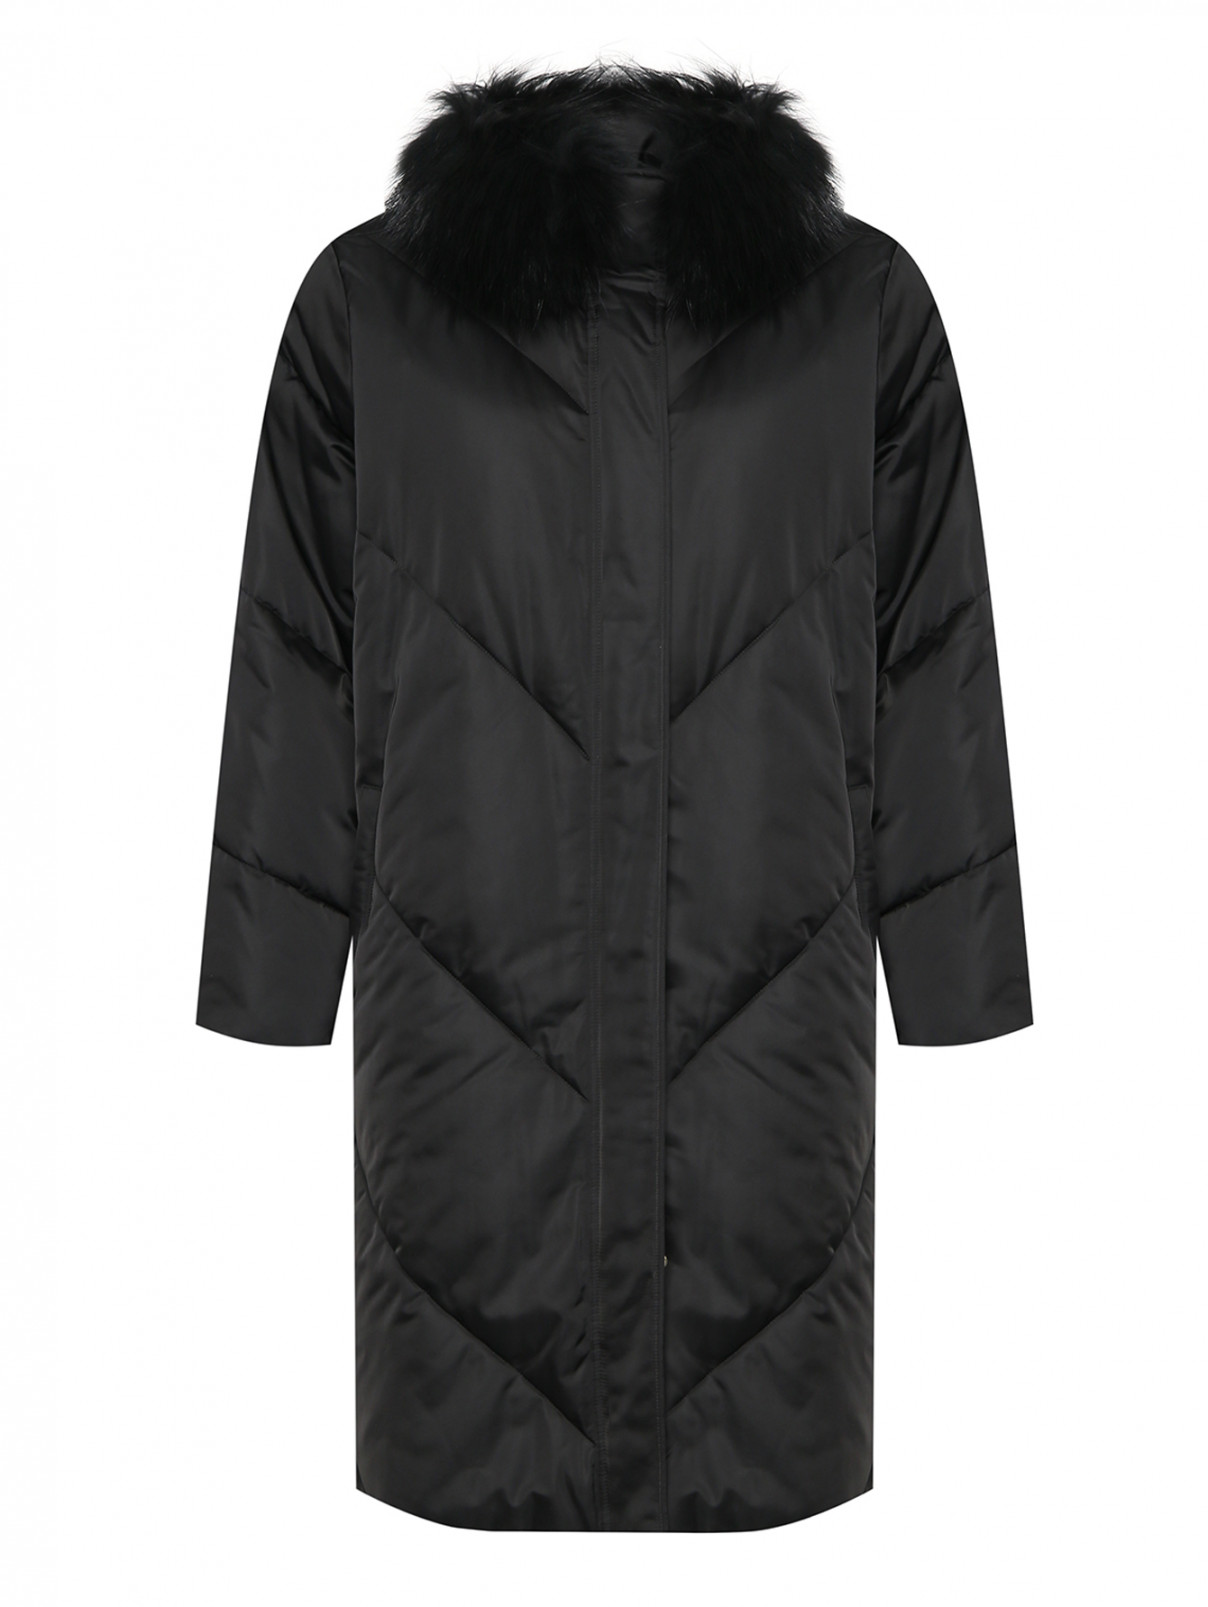 Стеганая утепленная куртка с меховым воротником Marina Rinaldi  –  Общий вид  – Цвет:  Черный